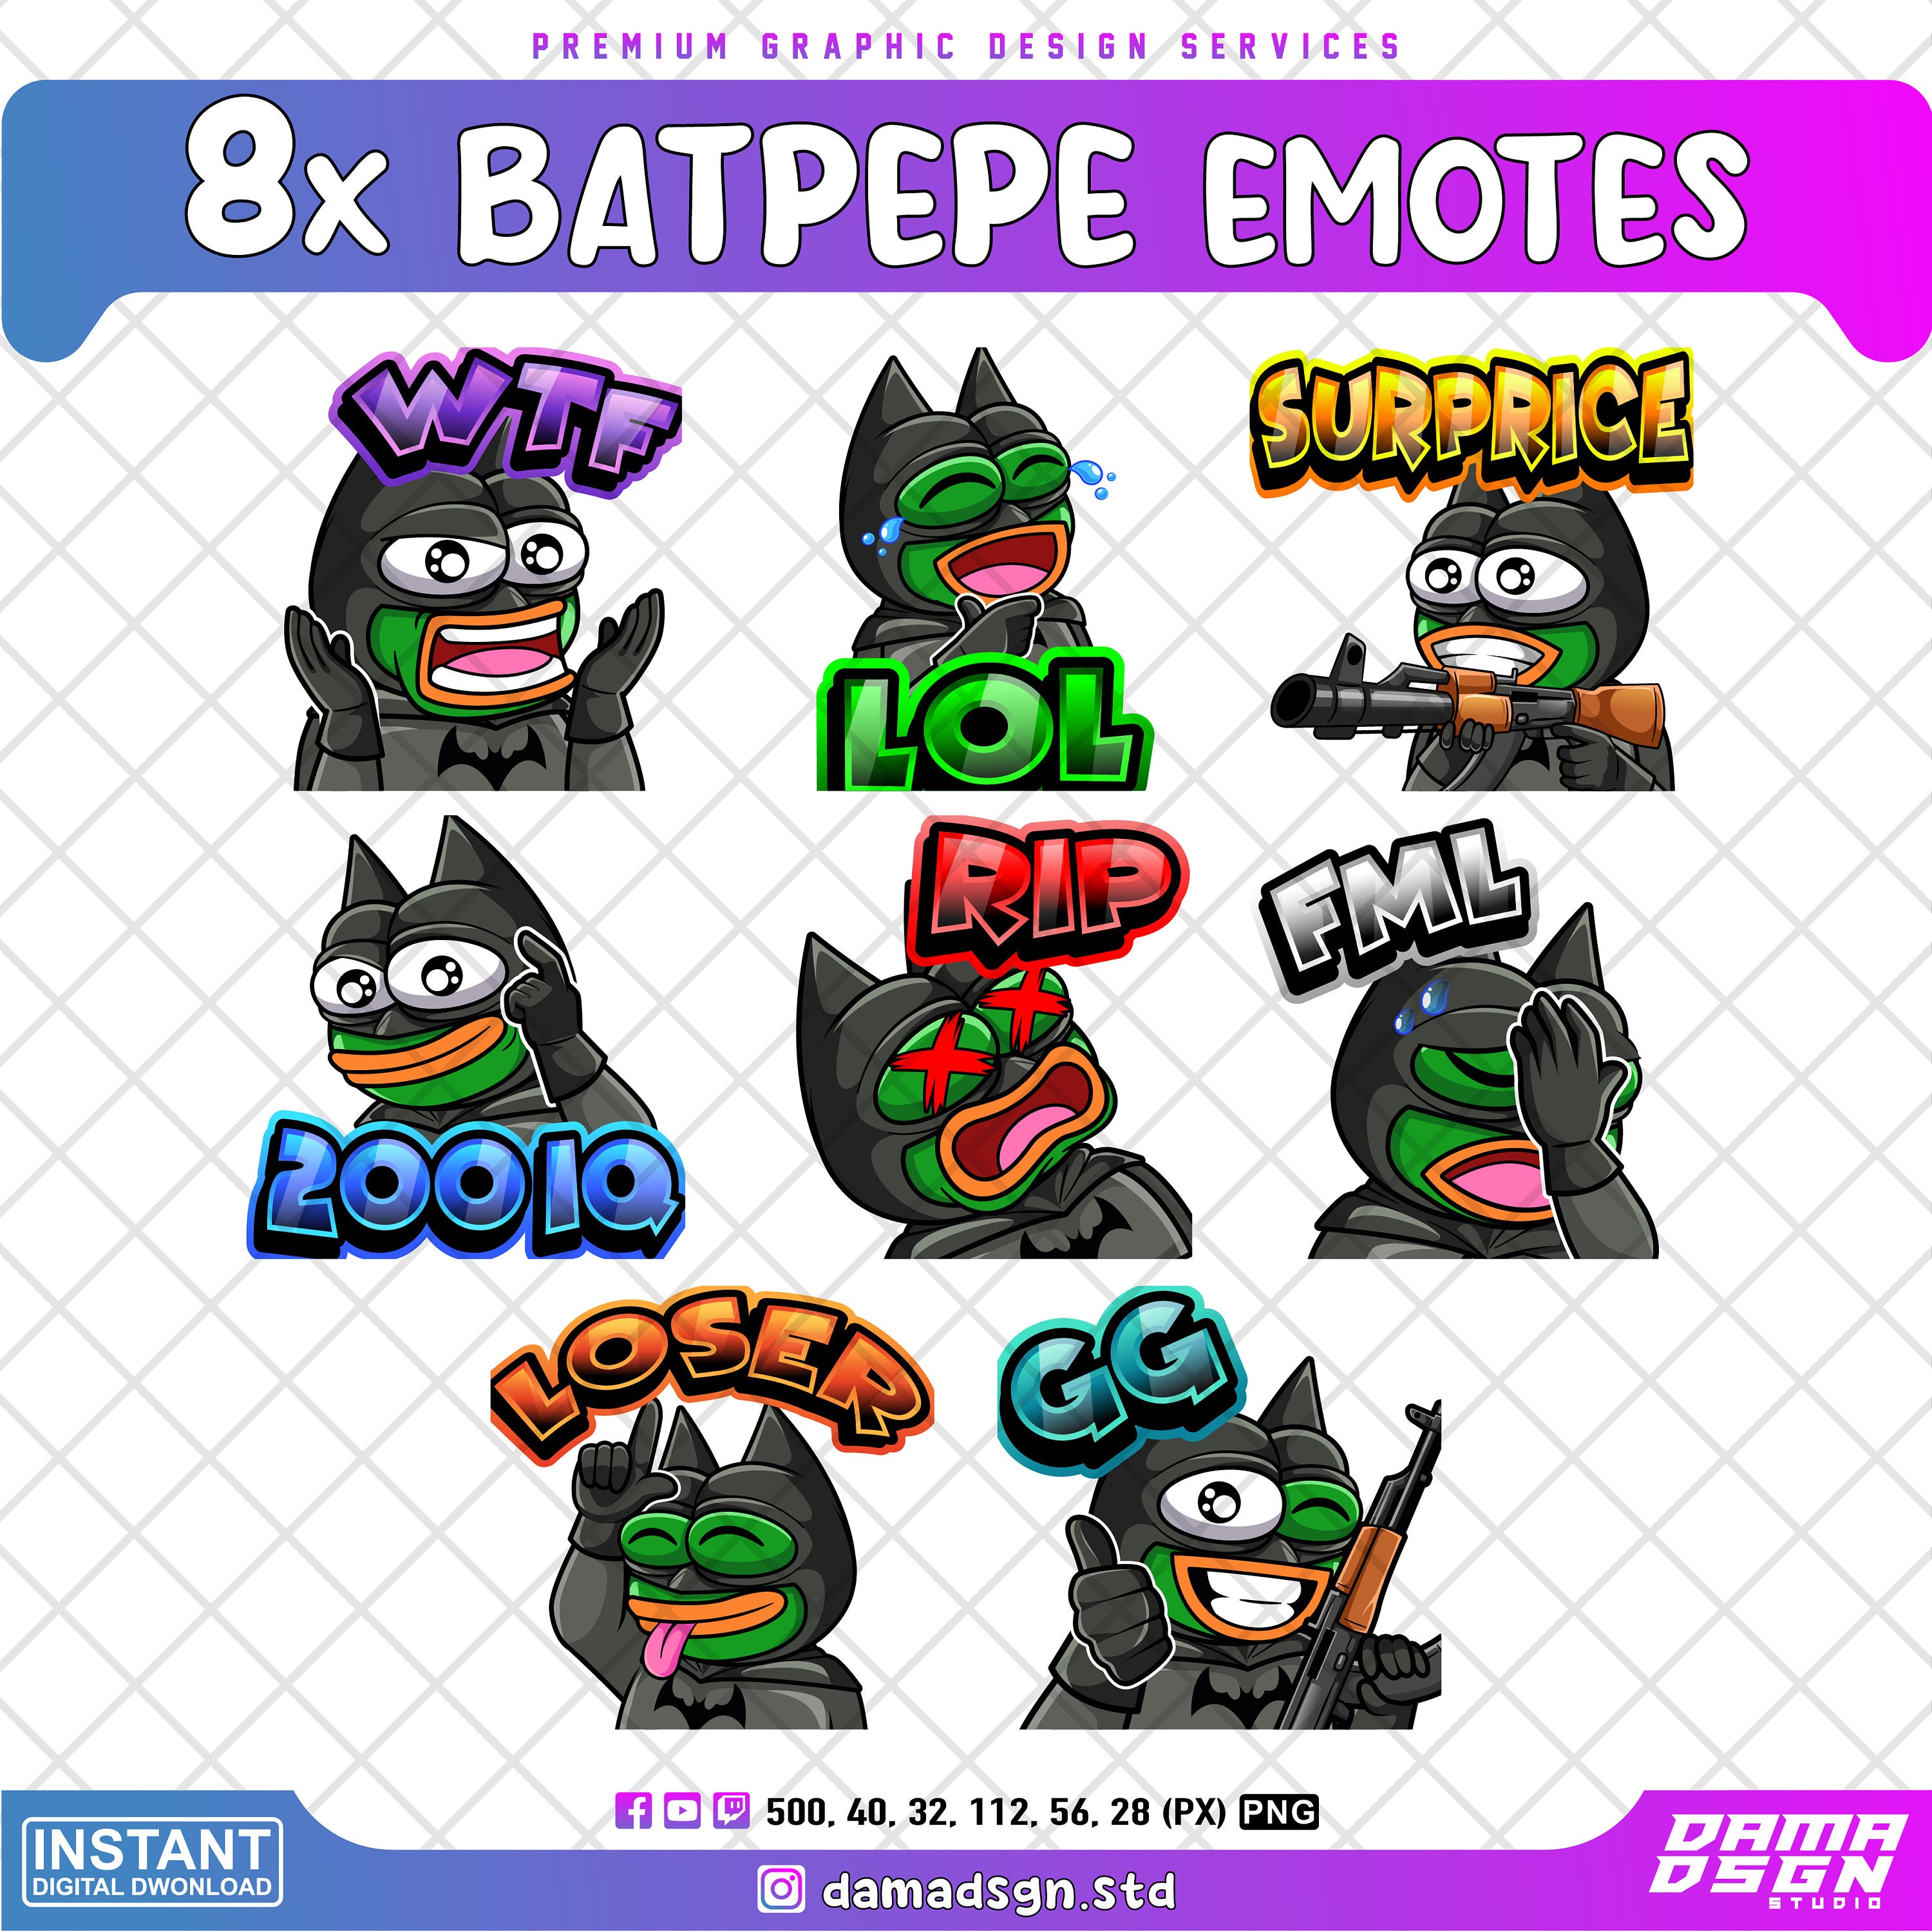 8x Bat PEPE Twitch Emotes Discord Emotes Youtube Emotes - Etsy